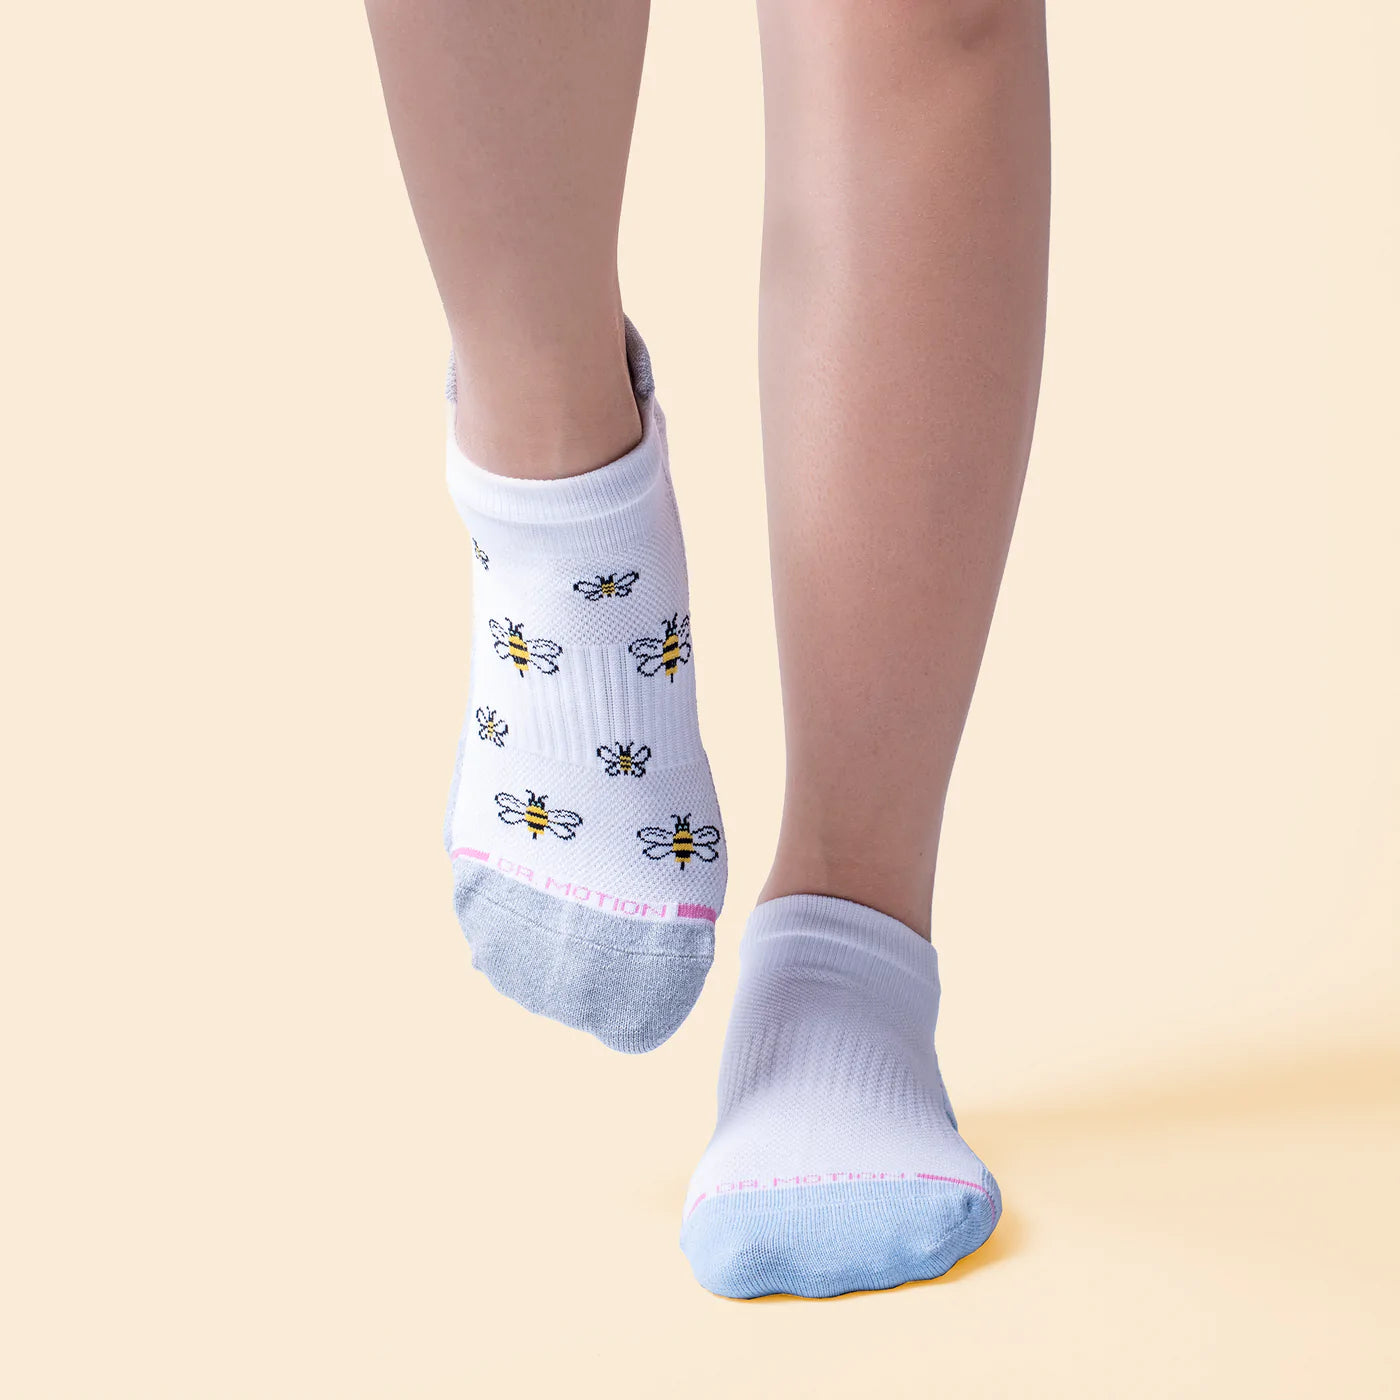 Benefits of Ankle Compression Socks, Dr. Motion